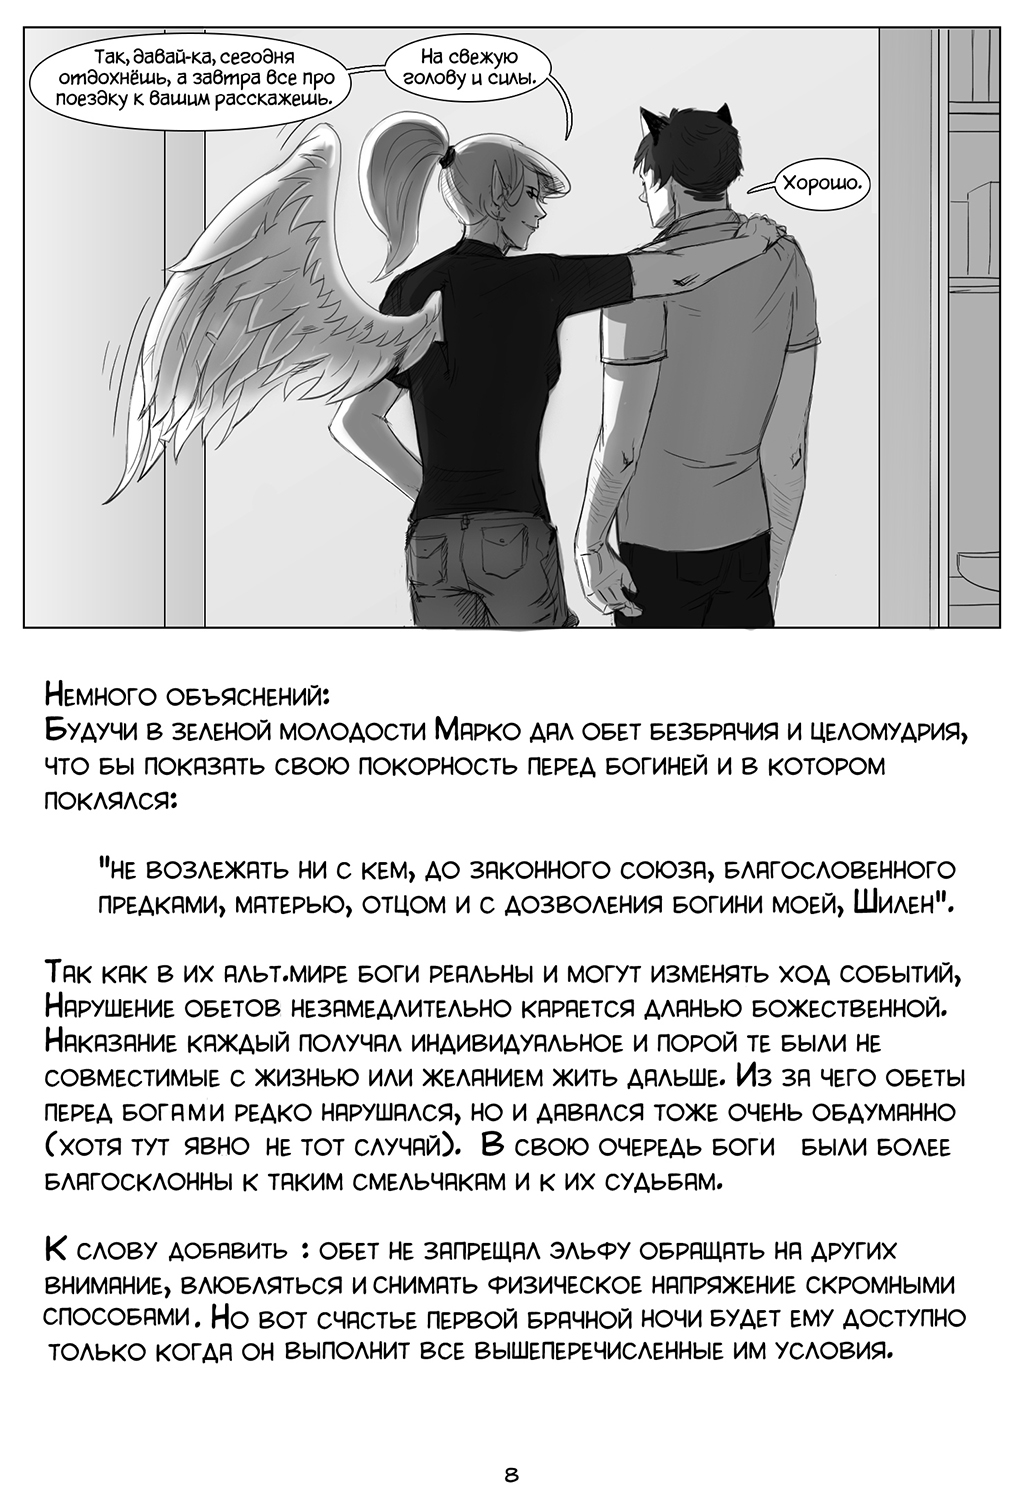 Комикс "Кристофер и Марко" - Чужая стая: выпуск №10